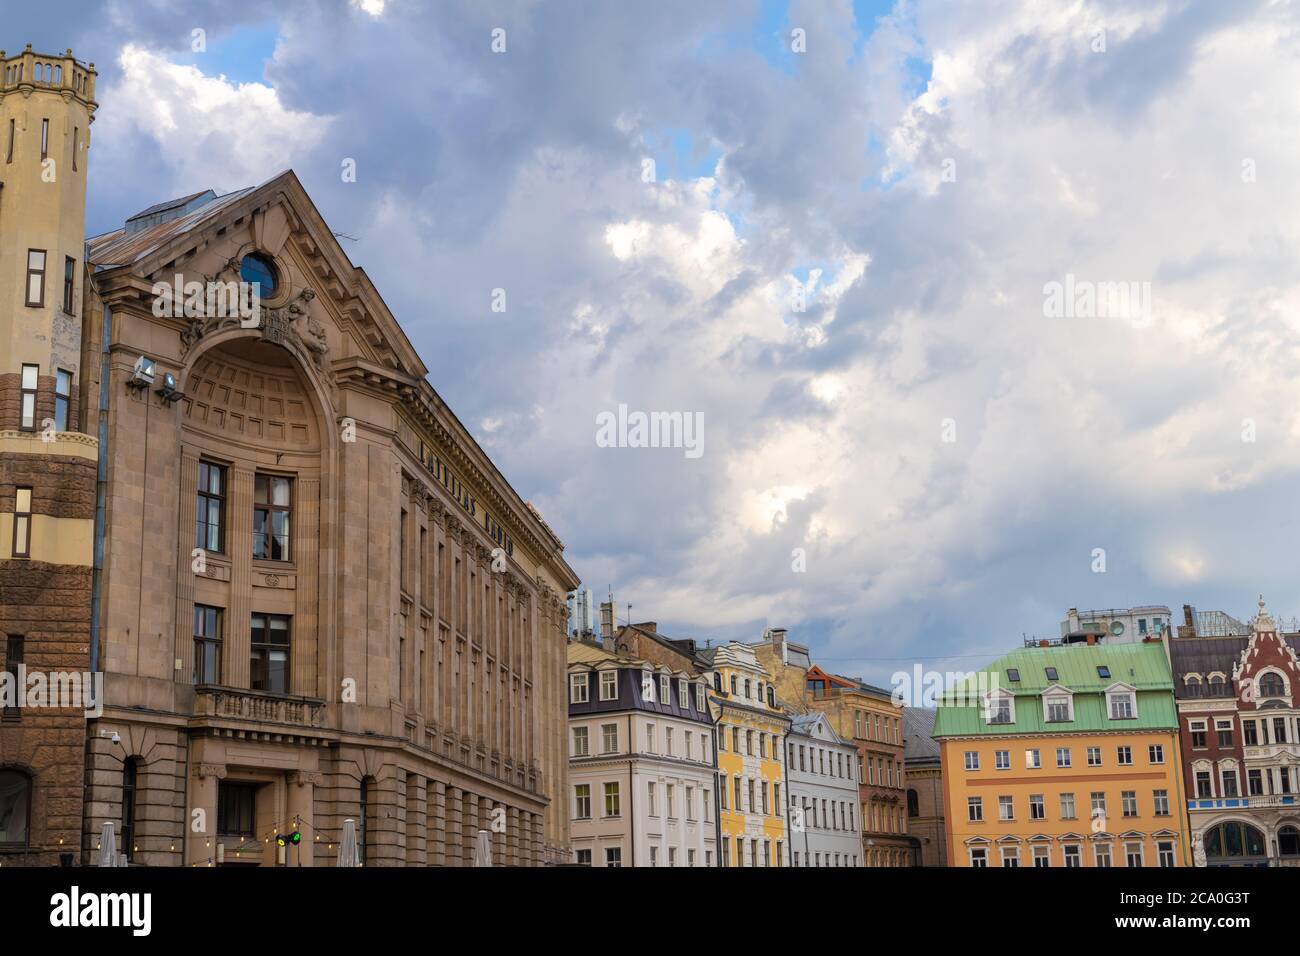 Las encantadoras calles del casco antiguo de Riga, Ltvia. Fundada en 1209, su casco antiguo es un lugar declarado Patrimonio de la Humanidad por la UNESCO. Foto de stock